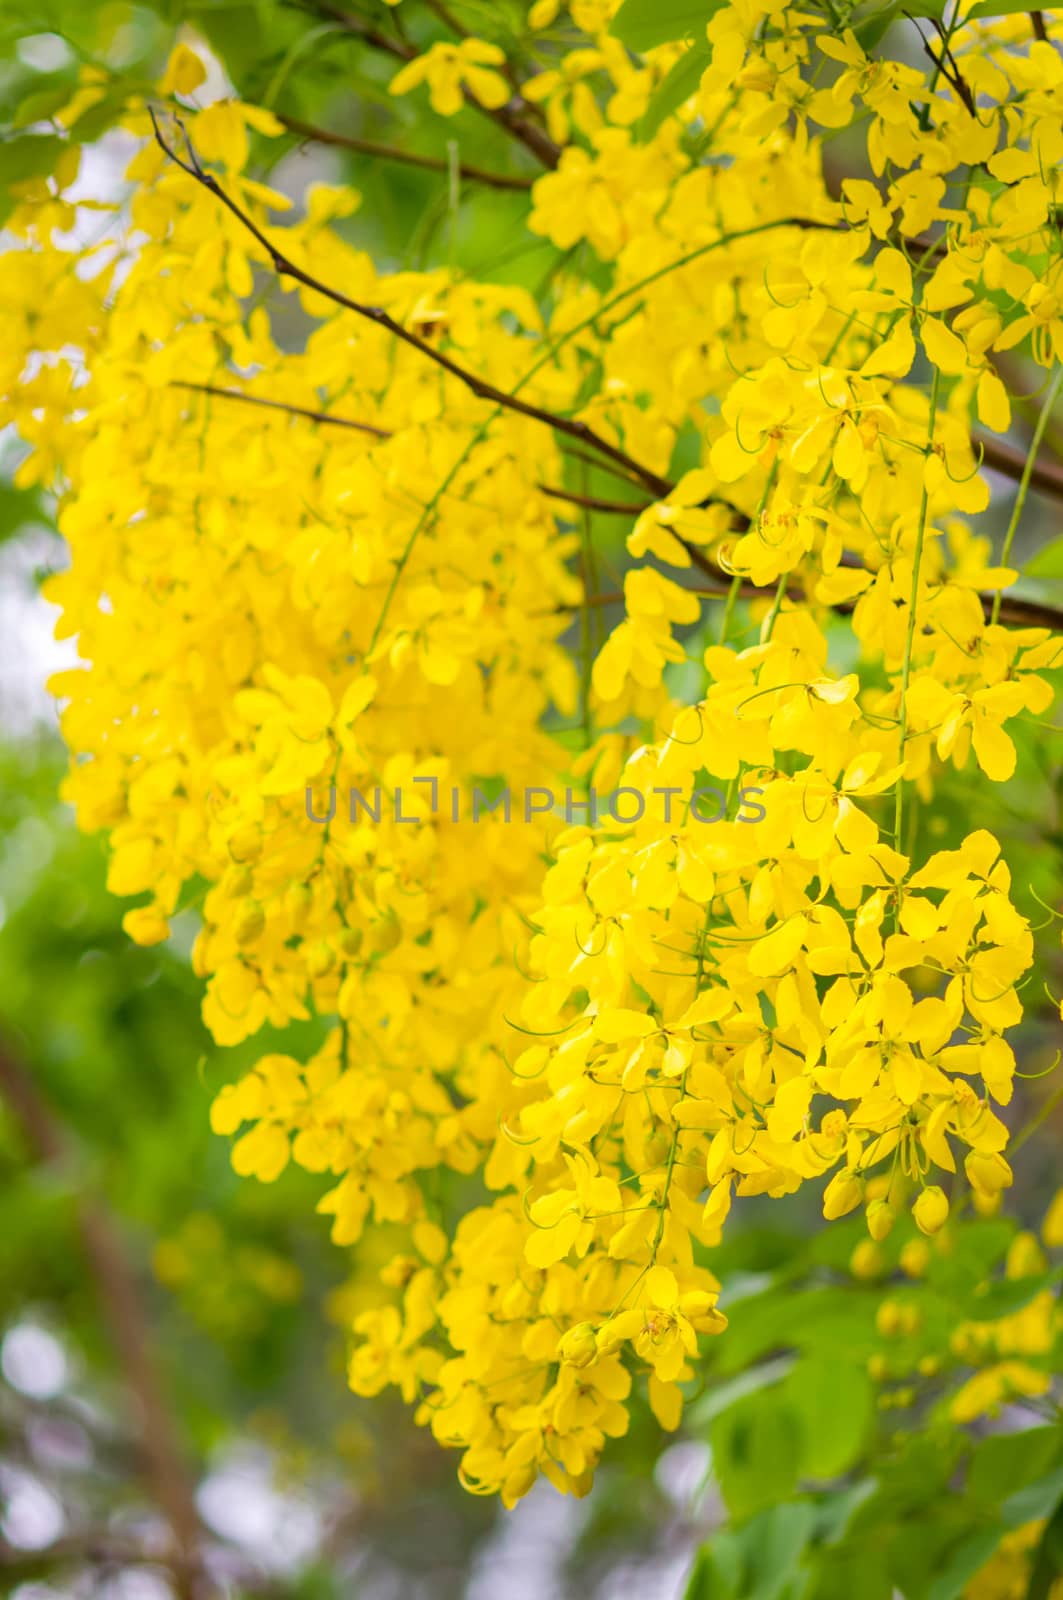 Cassia fistula or Golden shower flower by seksan44